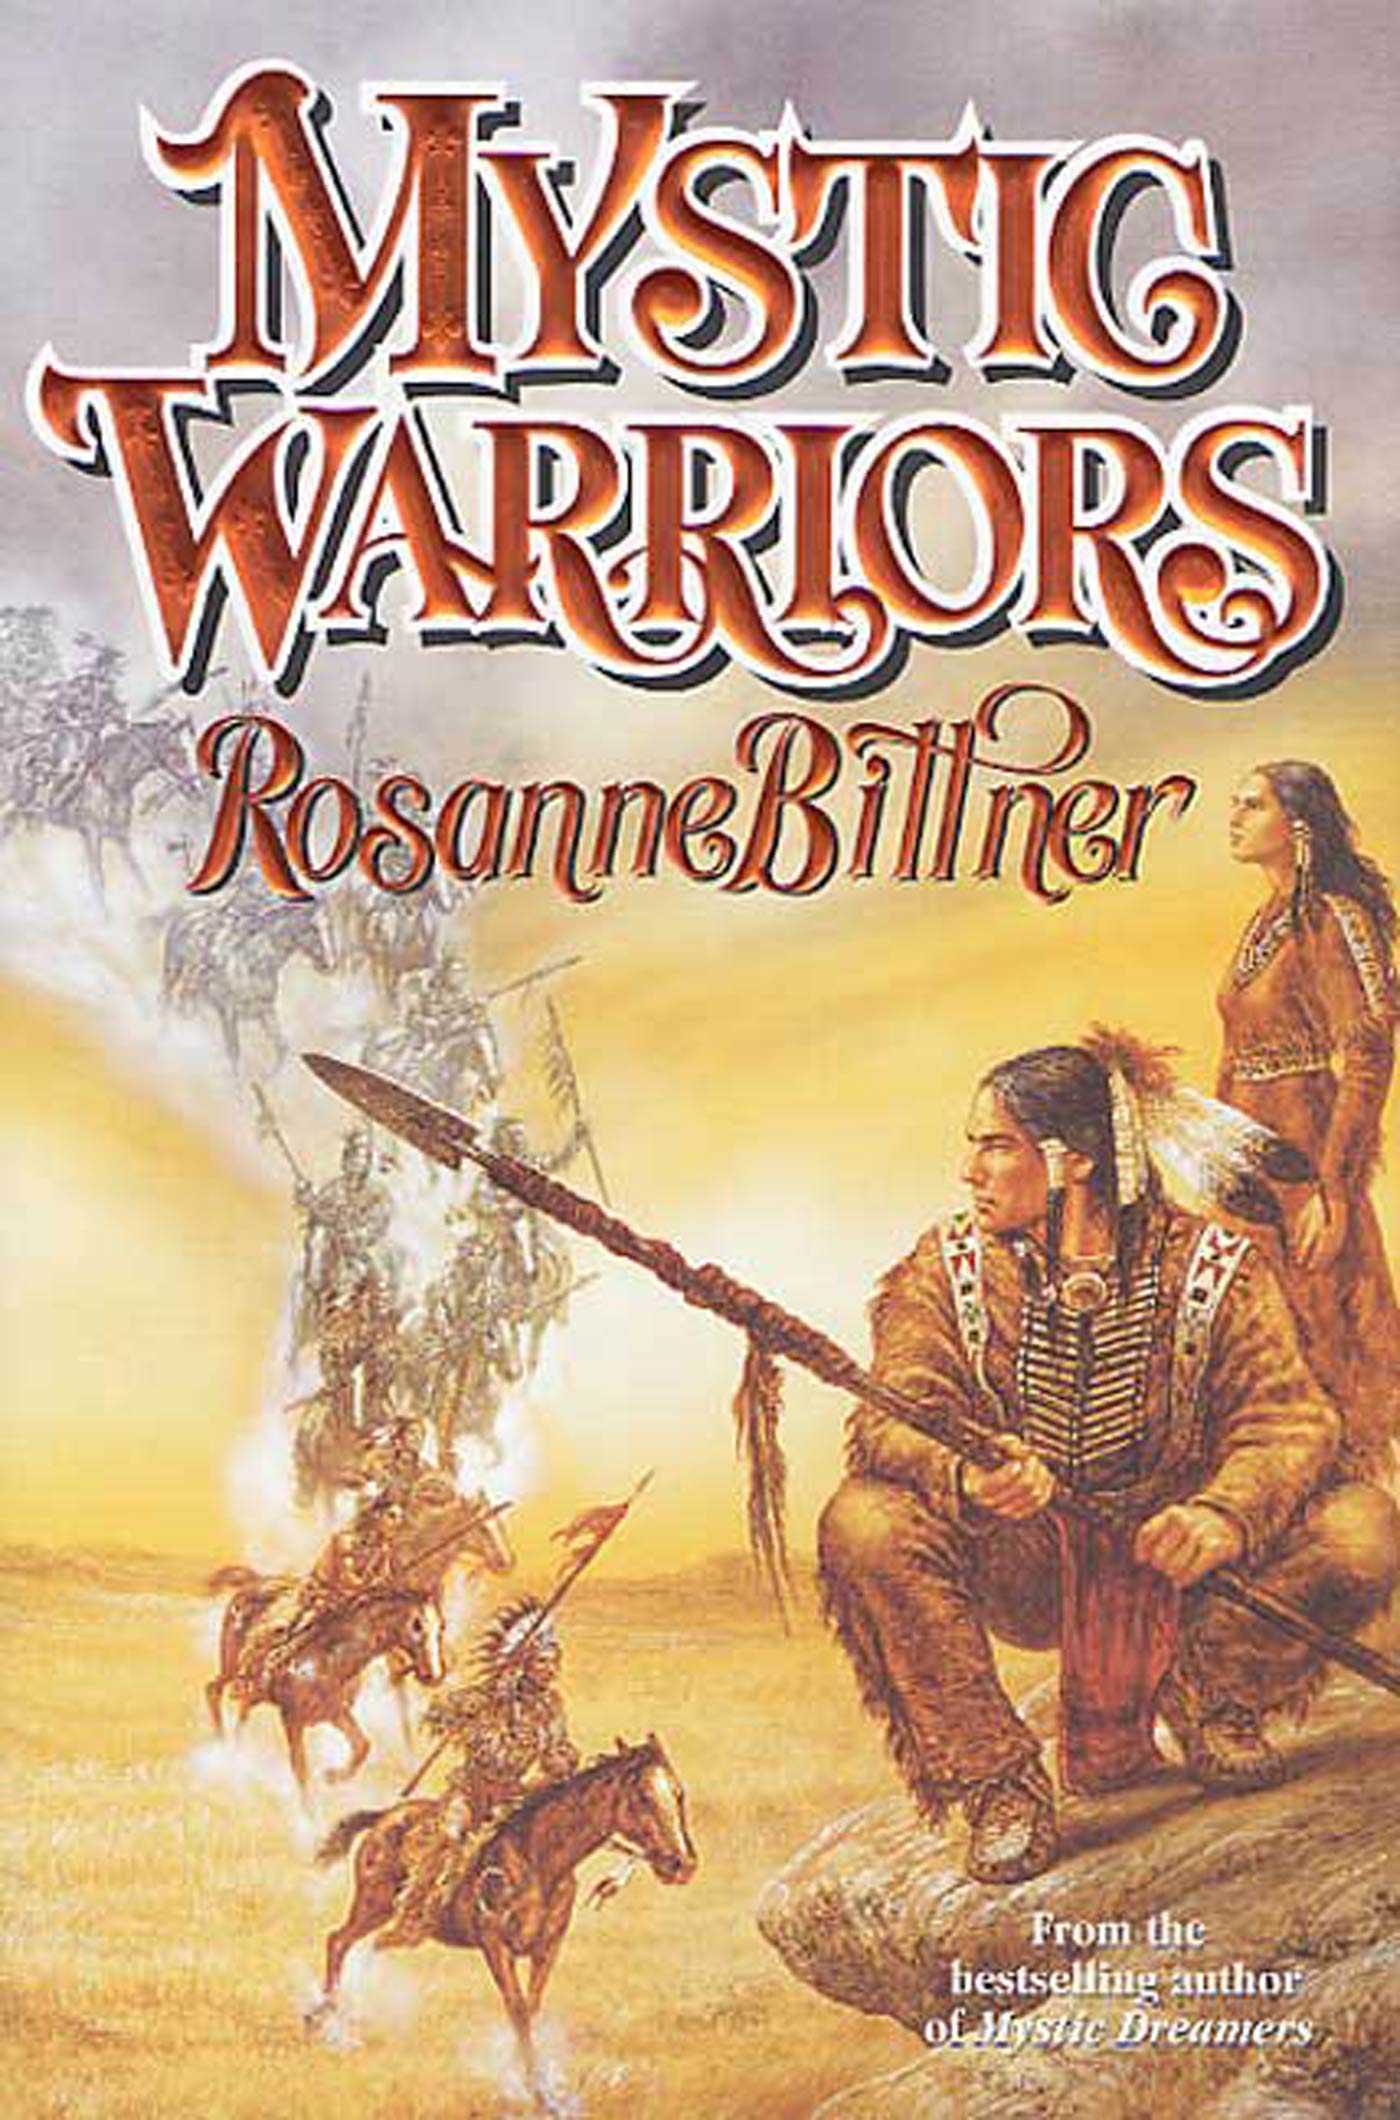 Mystic Warriors by Rosanne Bittner